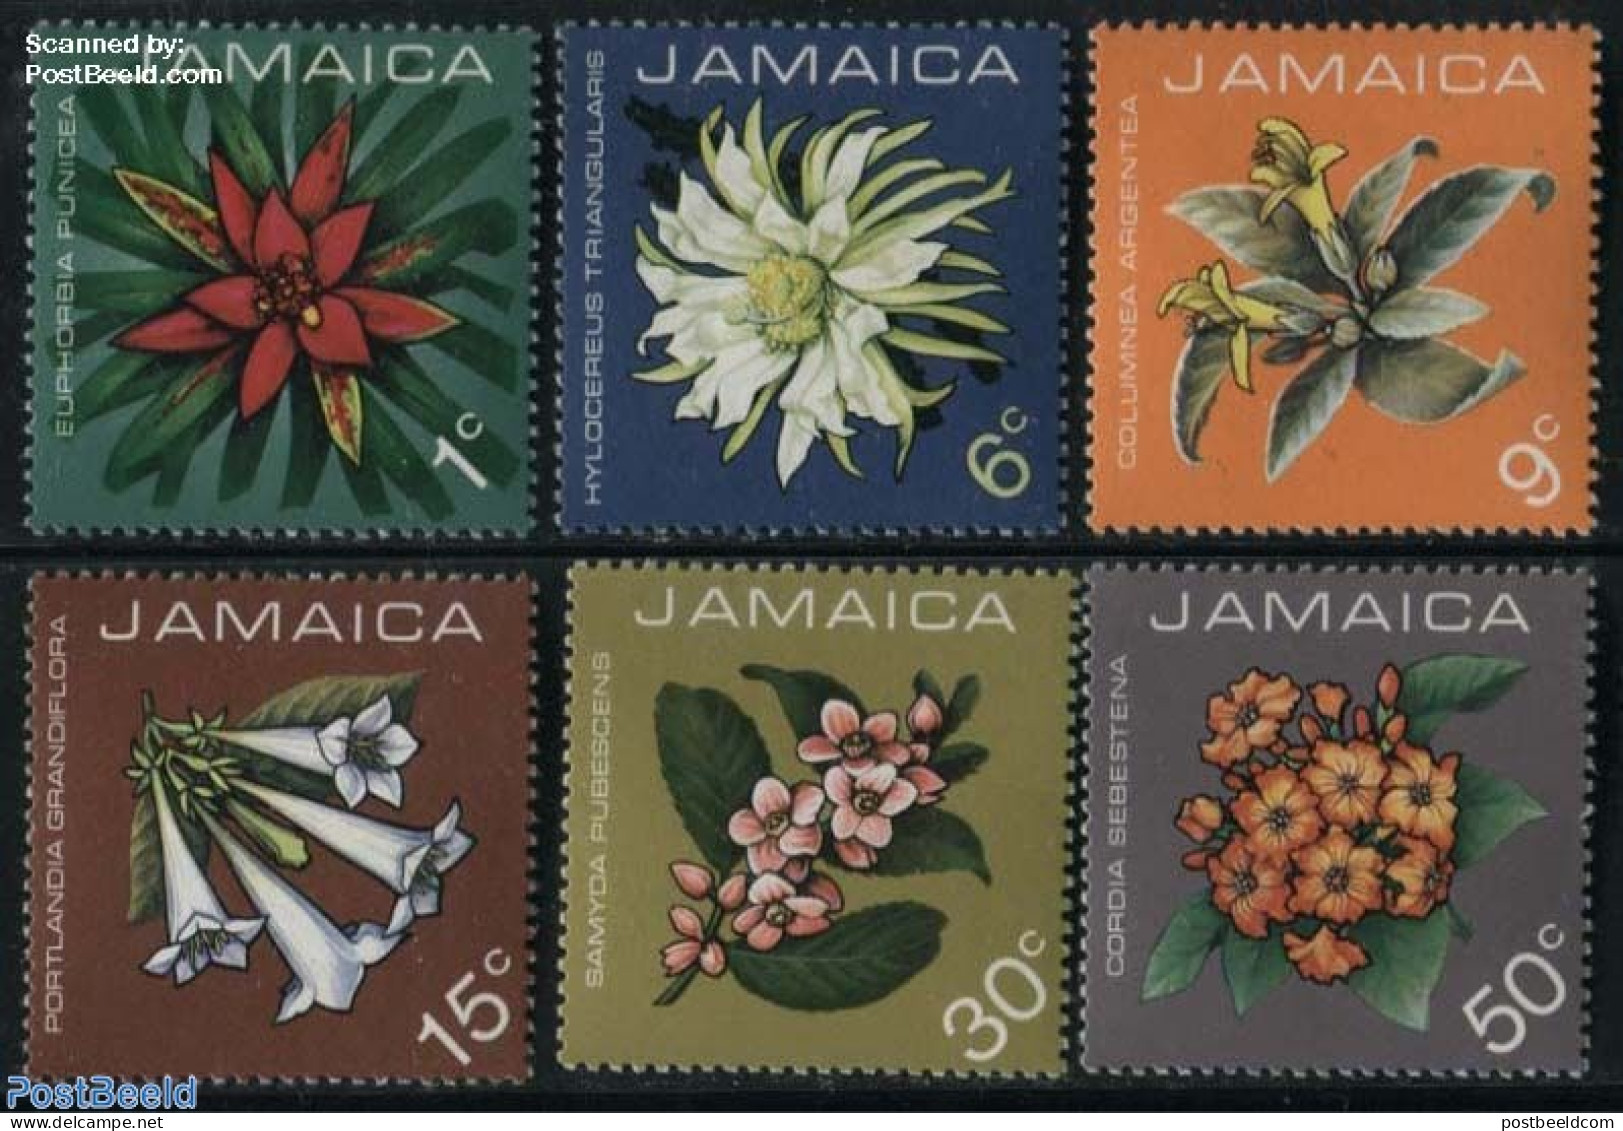 Jamaica 1973 Flowers 6v, Mint NH, Nature - Flowers & Plants - Jamaique (1962-...)